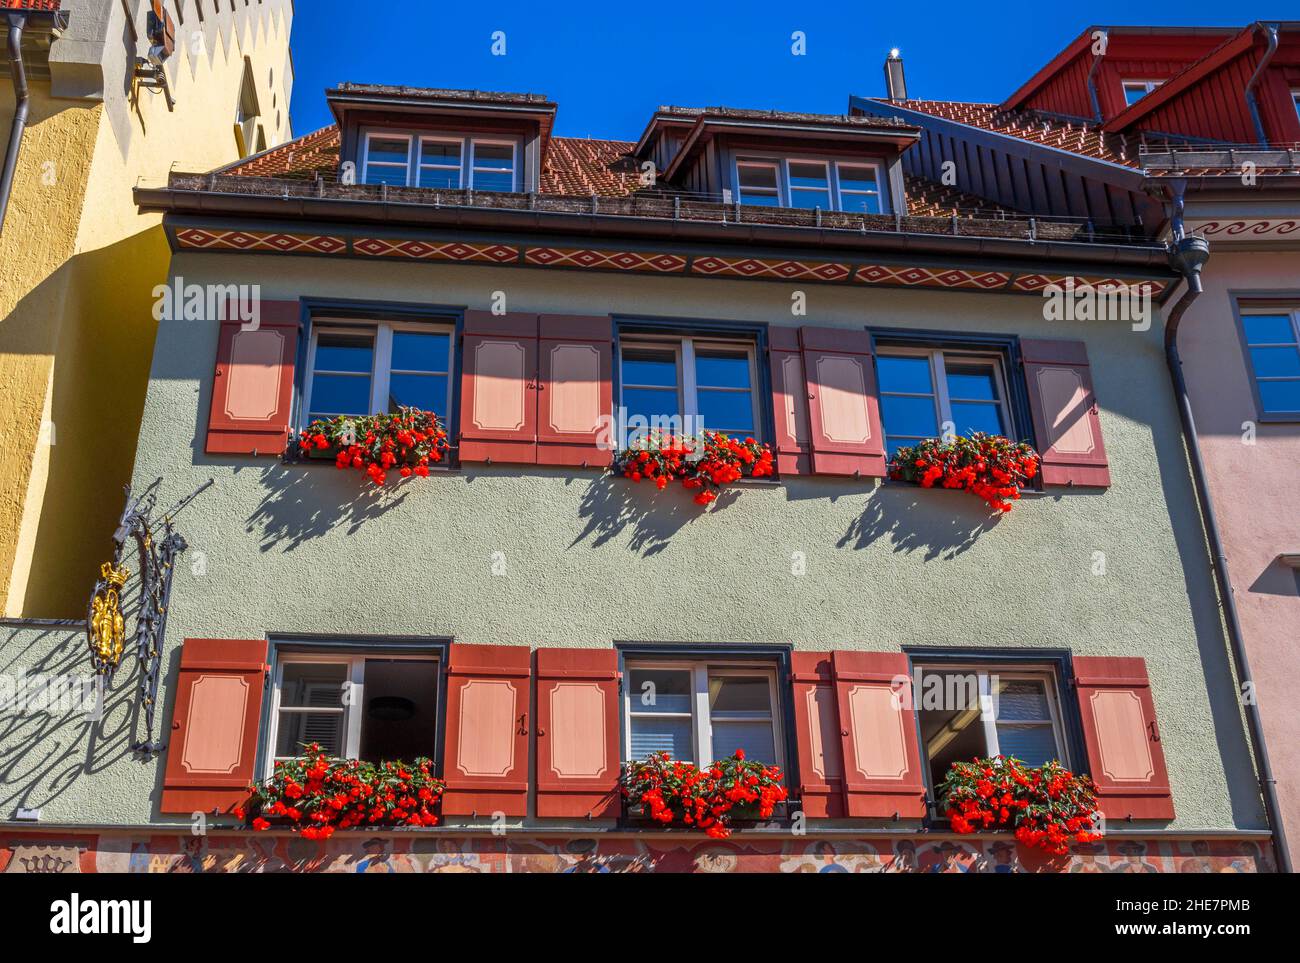 Haus mit bunten Fensterläden und Blumenkästen, Wangen im Allgäu, Baden-Württemberg, Deutschland Foto Stock